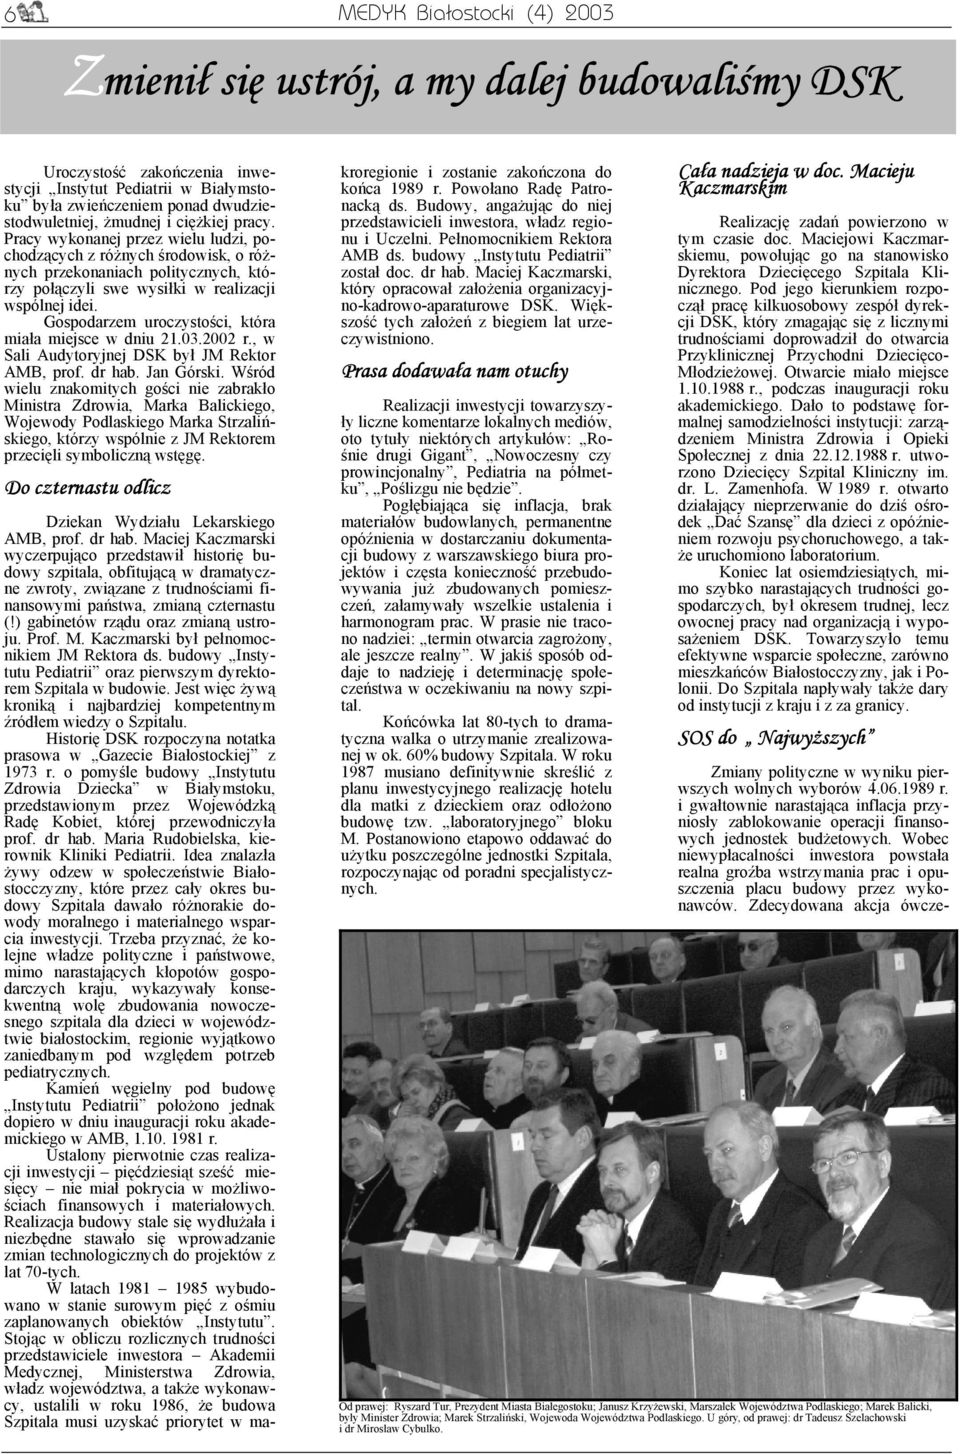 Gospodarzem uroczystości, która miała miejsce w dniu 21.03.2002 r., w Sali Audytoryjnej DSK był JM Rektor AMB, prof. dr hab. Jan Górski.